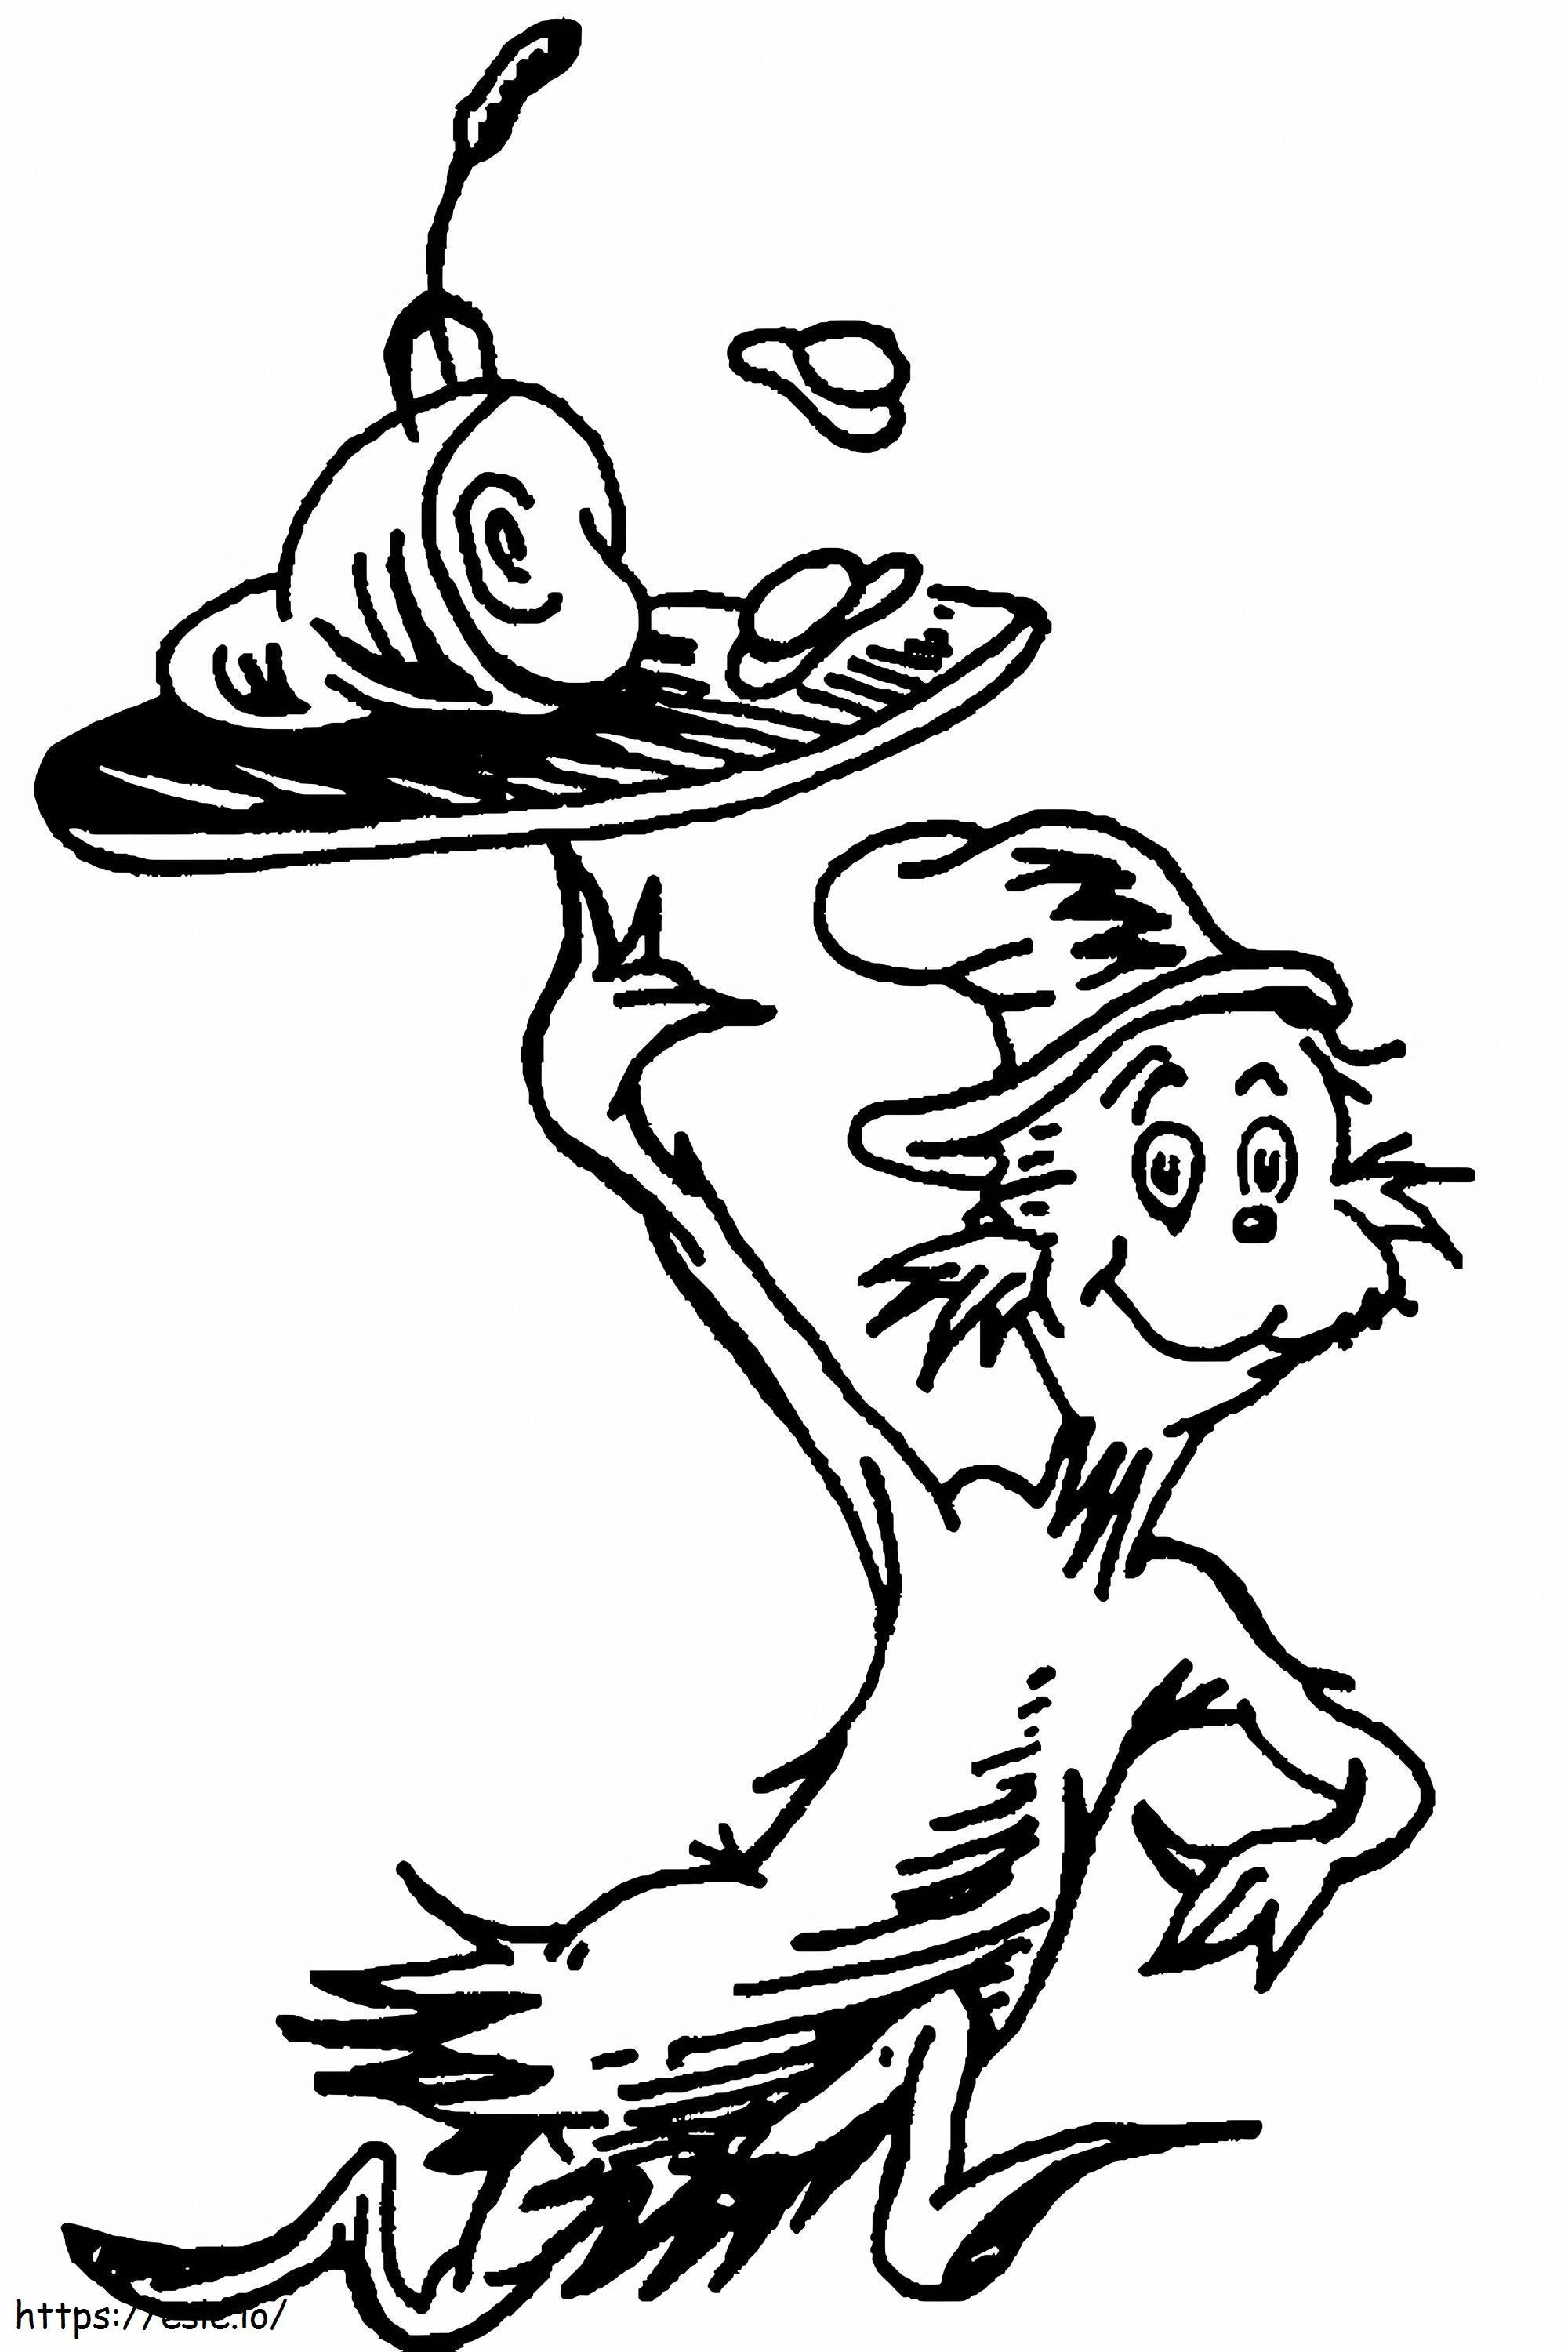 1580719892 Schwarz-weiß herunterladbare Jpg Dr. Seuss Clipart ausmalbilder